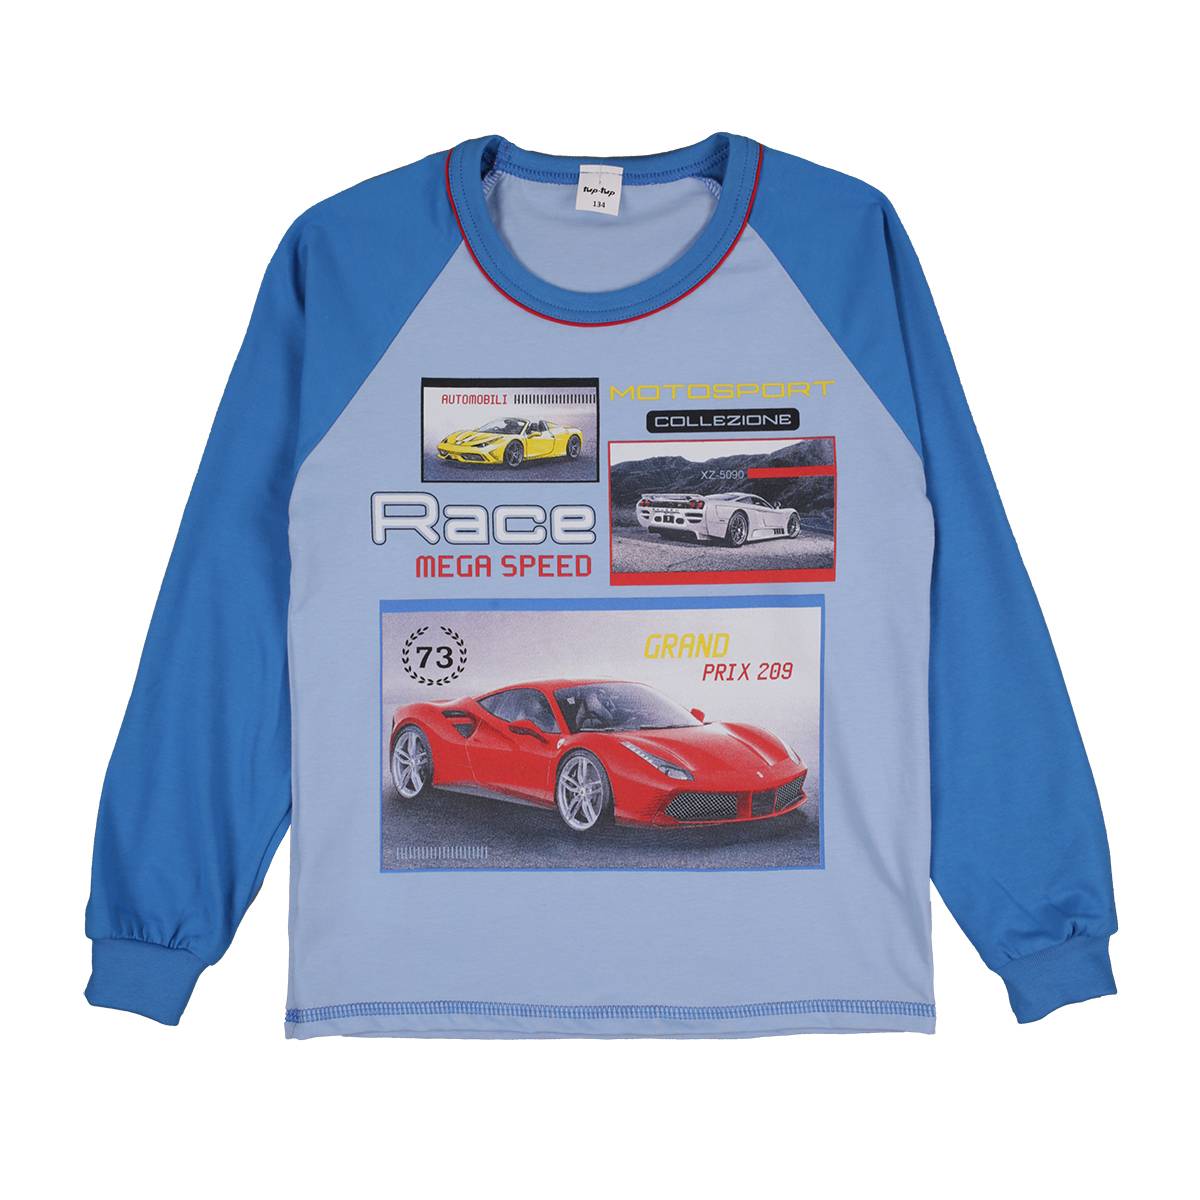 Chłopięca niebieska piżama samochód wyścigowy Tup Tup